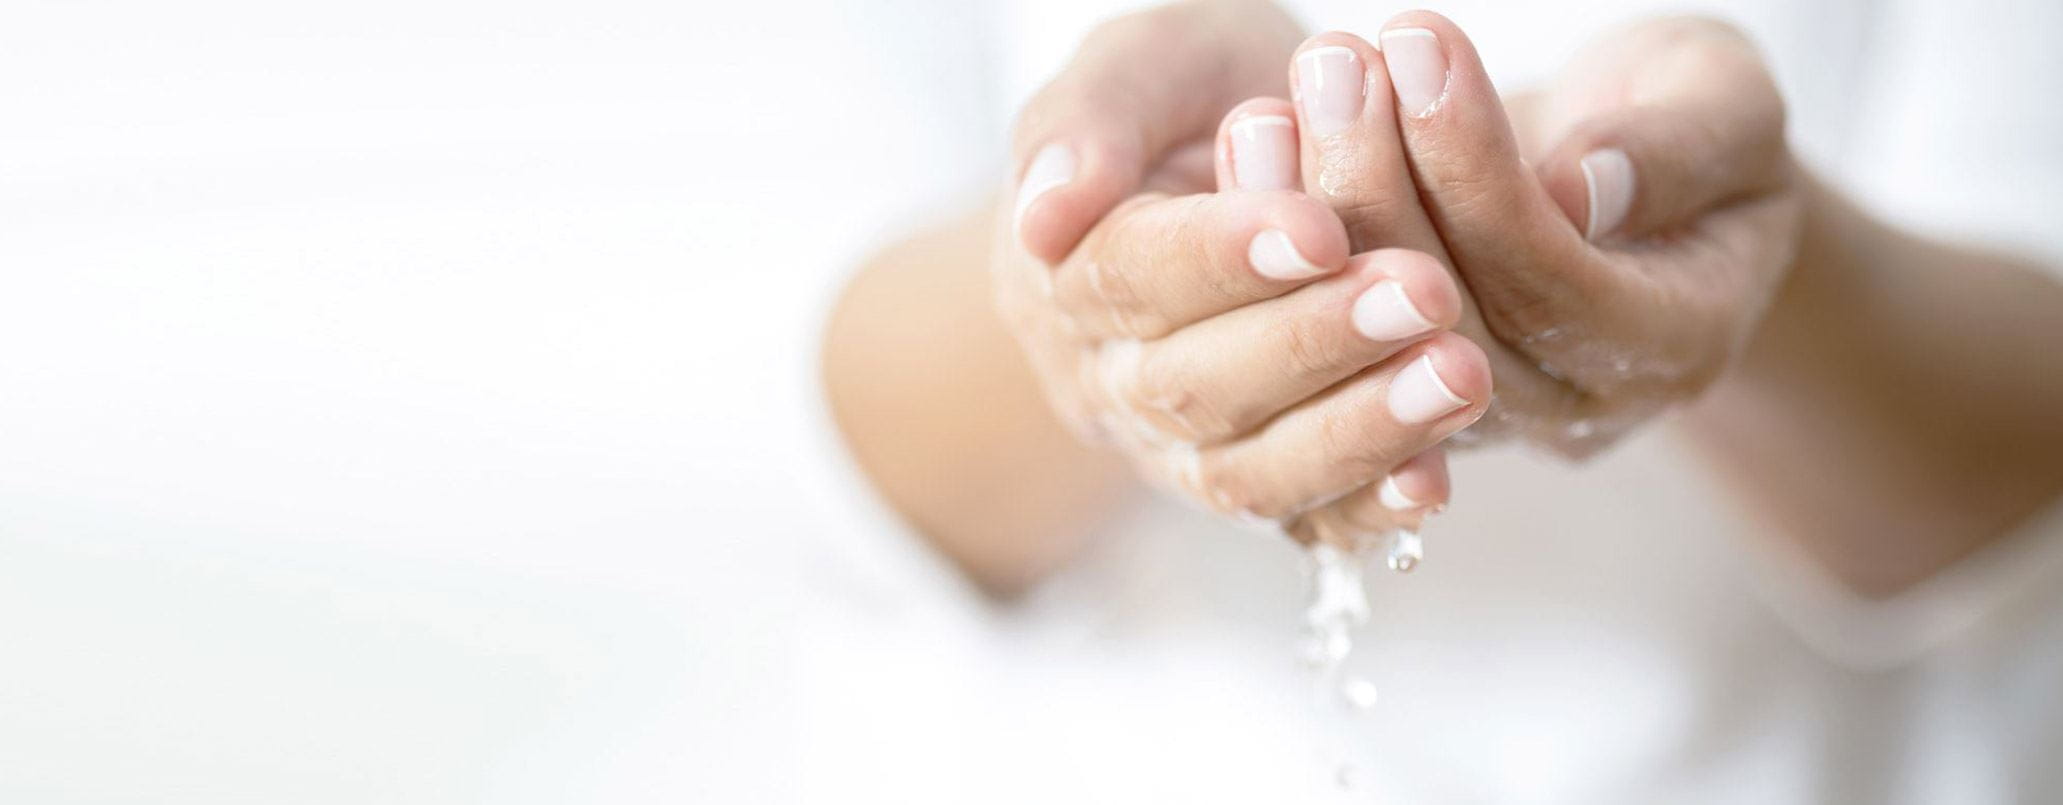 prevenire la diffusione dei virus lavandosi le mani